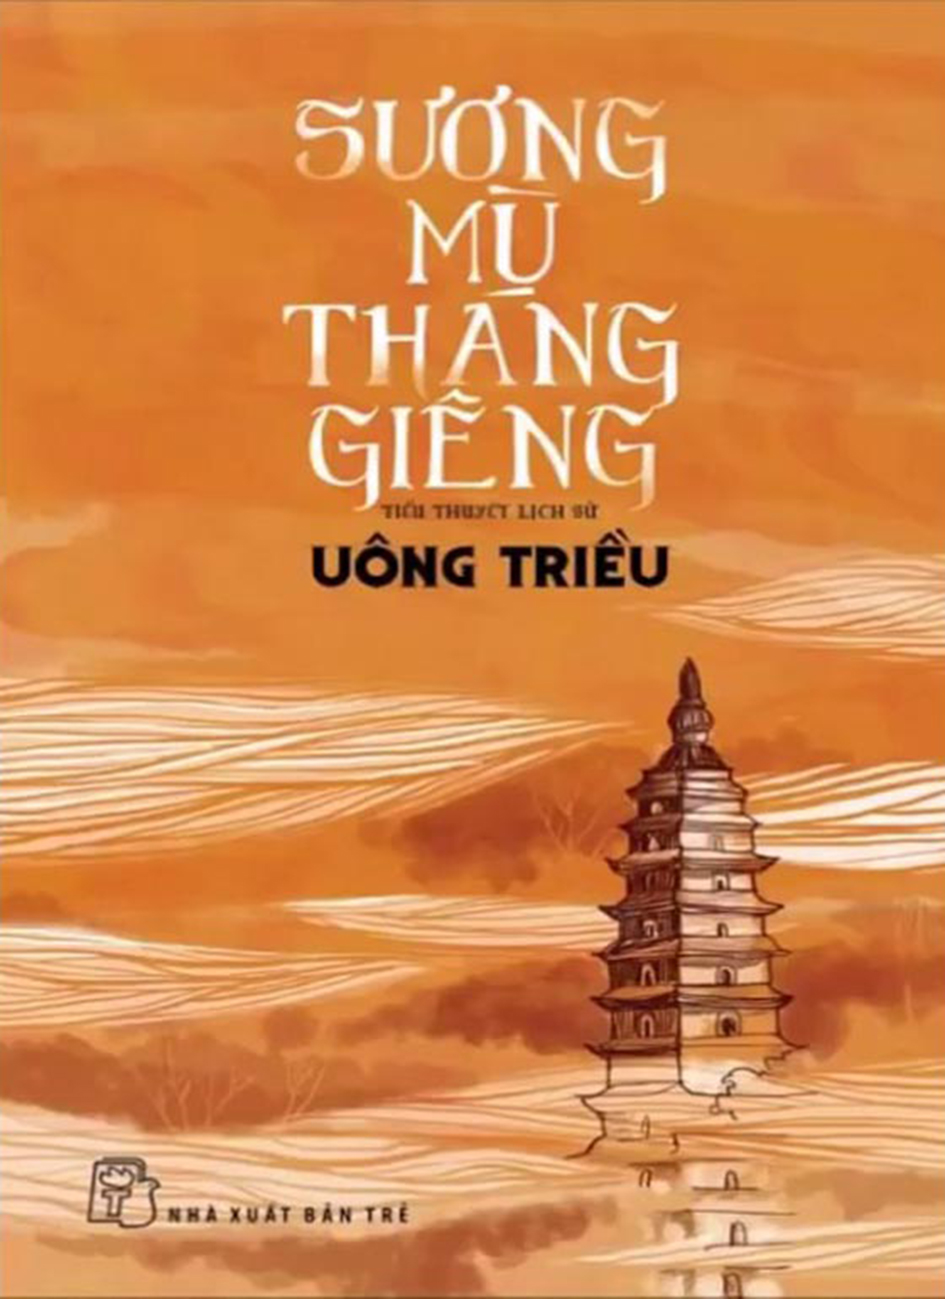 Suong Mu Thang Gieng